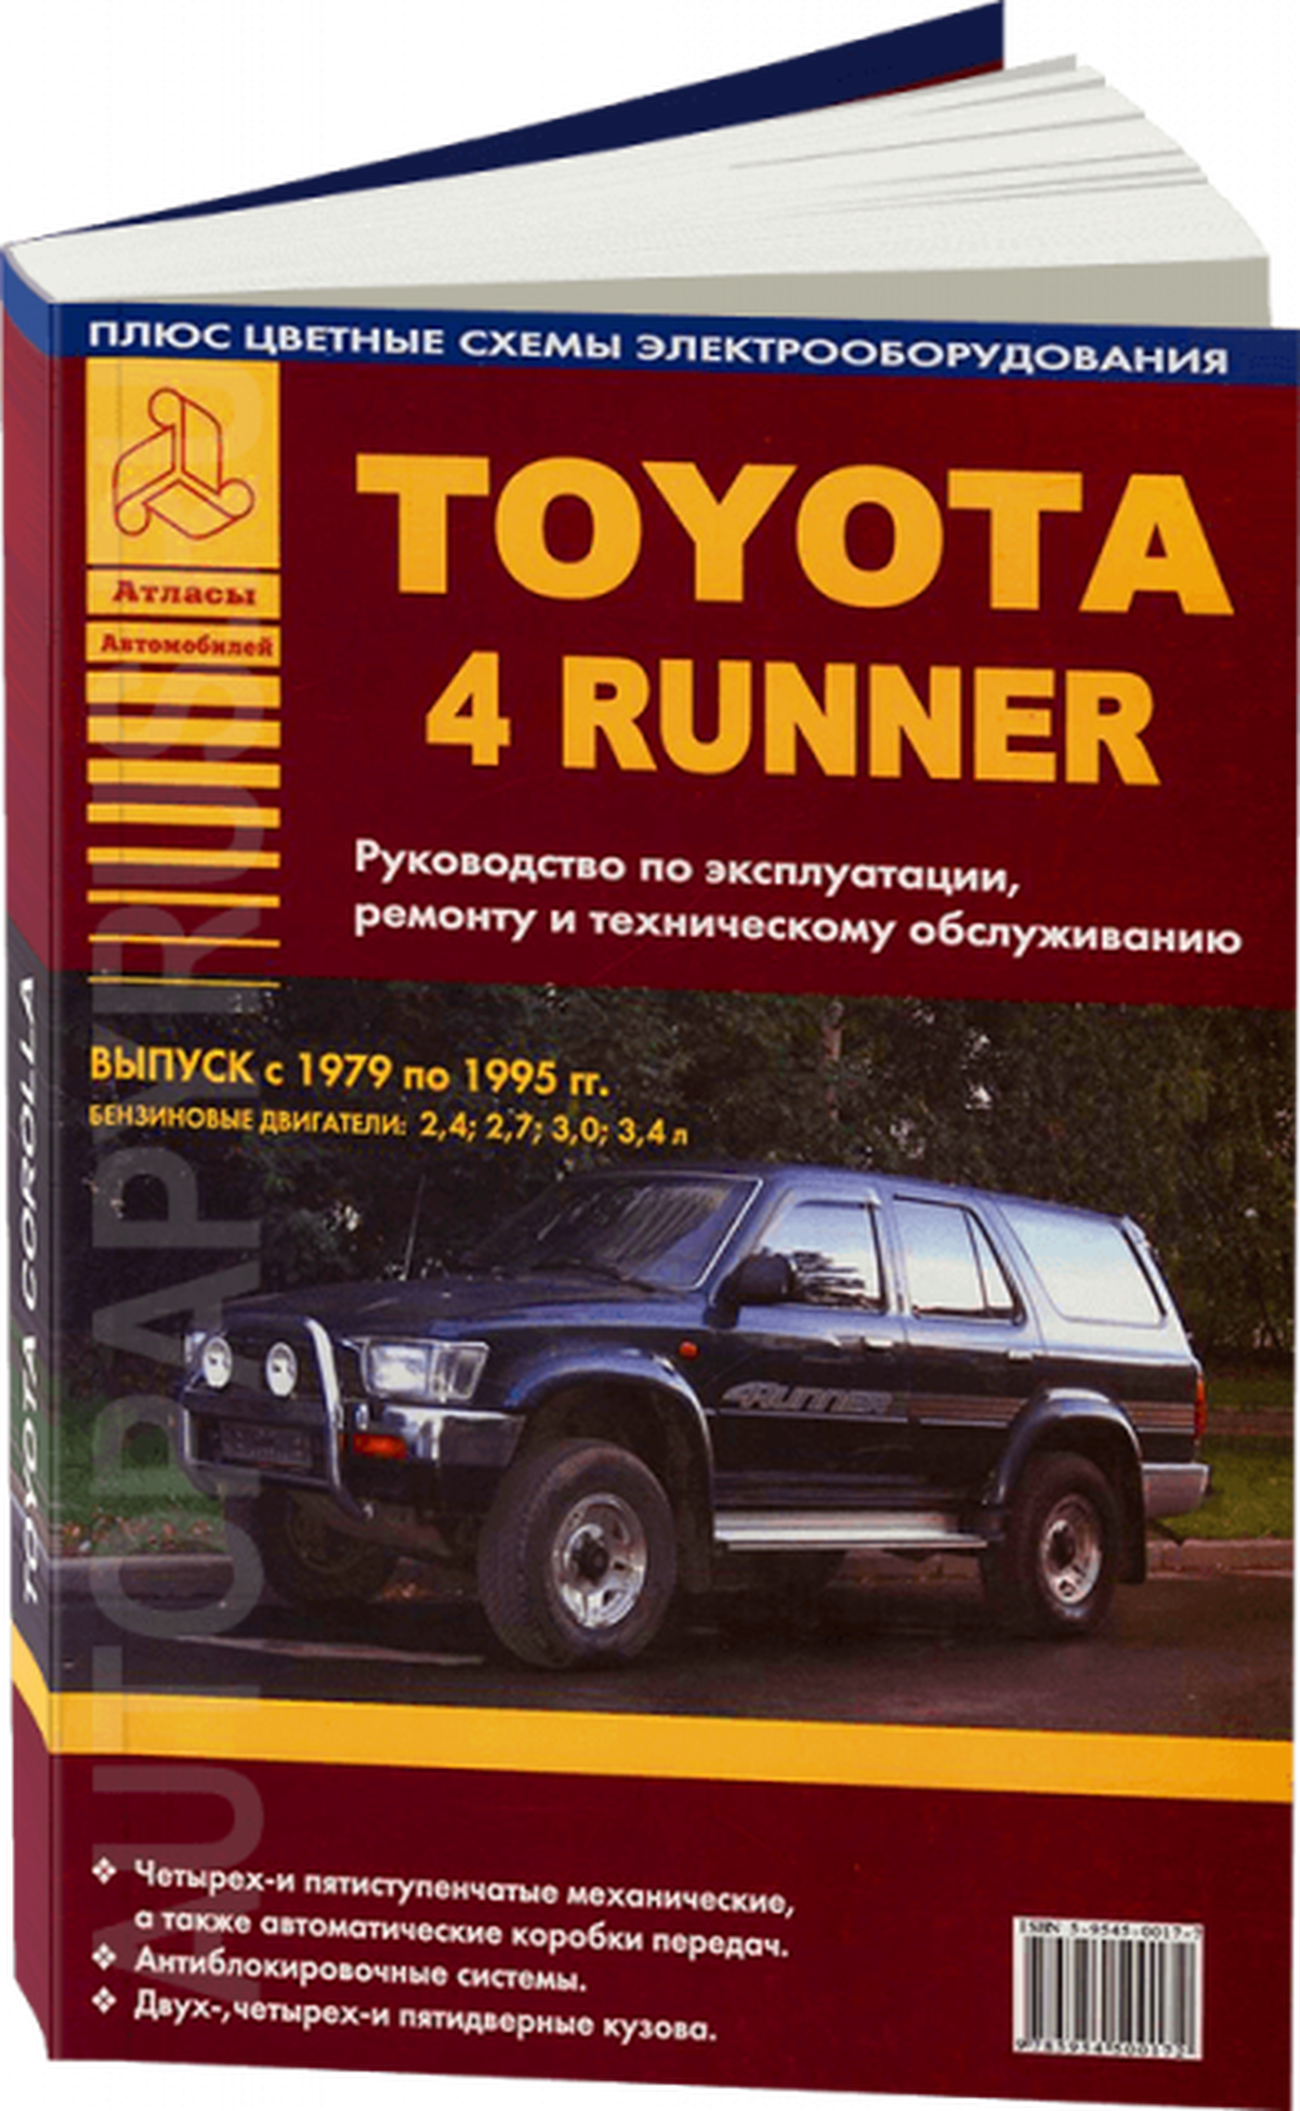 Книга: TOYOTA 4 RUNNER (б) 1979-1995 г.в., рем., экспл., то | Арго-Авто